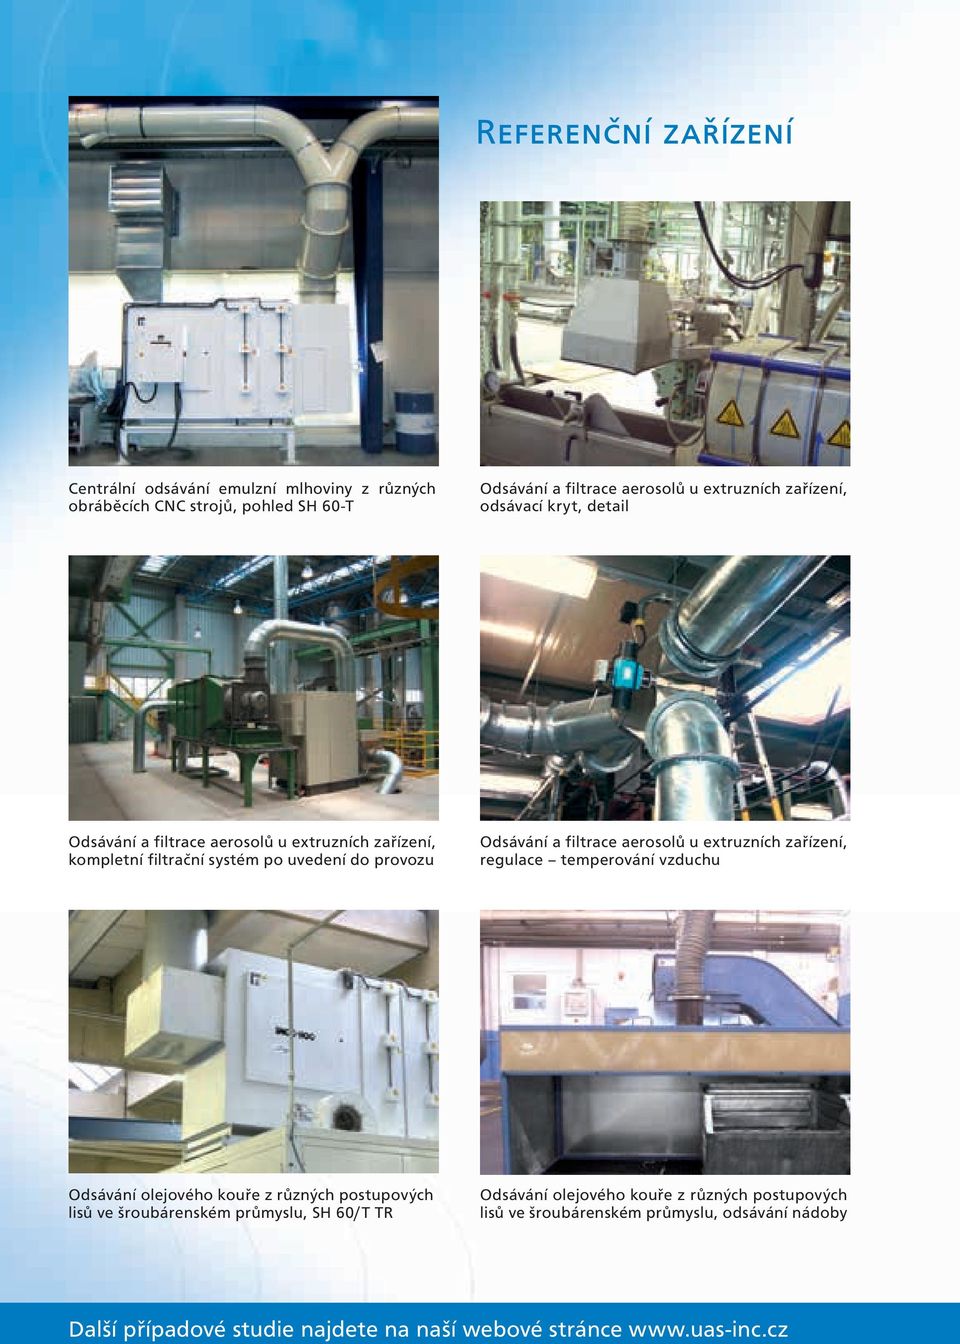 aerosolů u extruzních zařízení, regulace temperování vzduchu Odsávání olejového kouře z různých postupových lisů ve šroubárenském průmyslu, SH 60/T TR